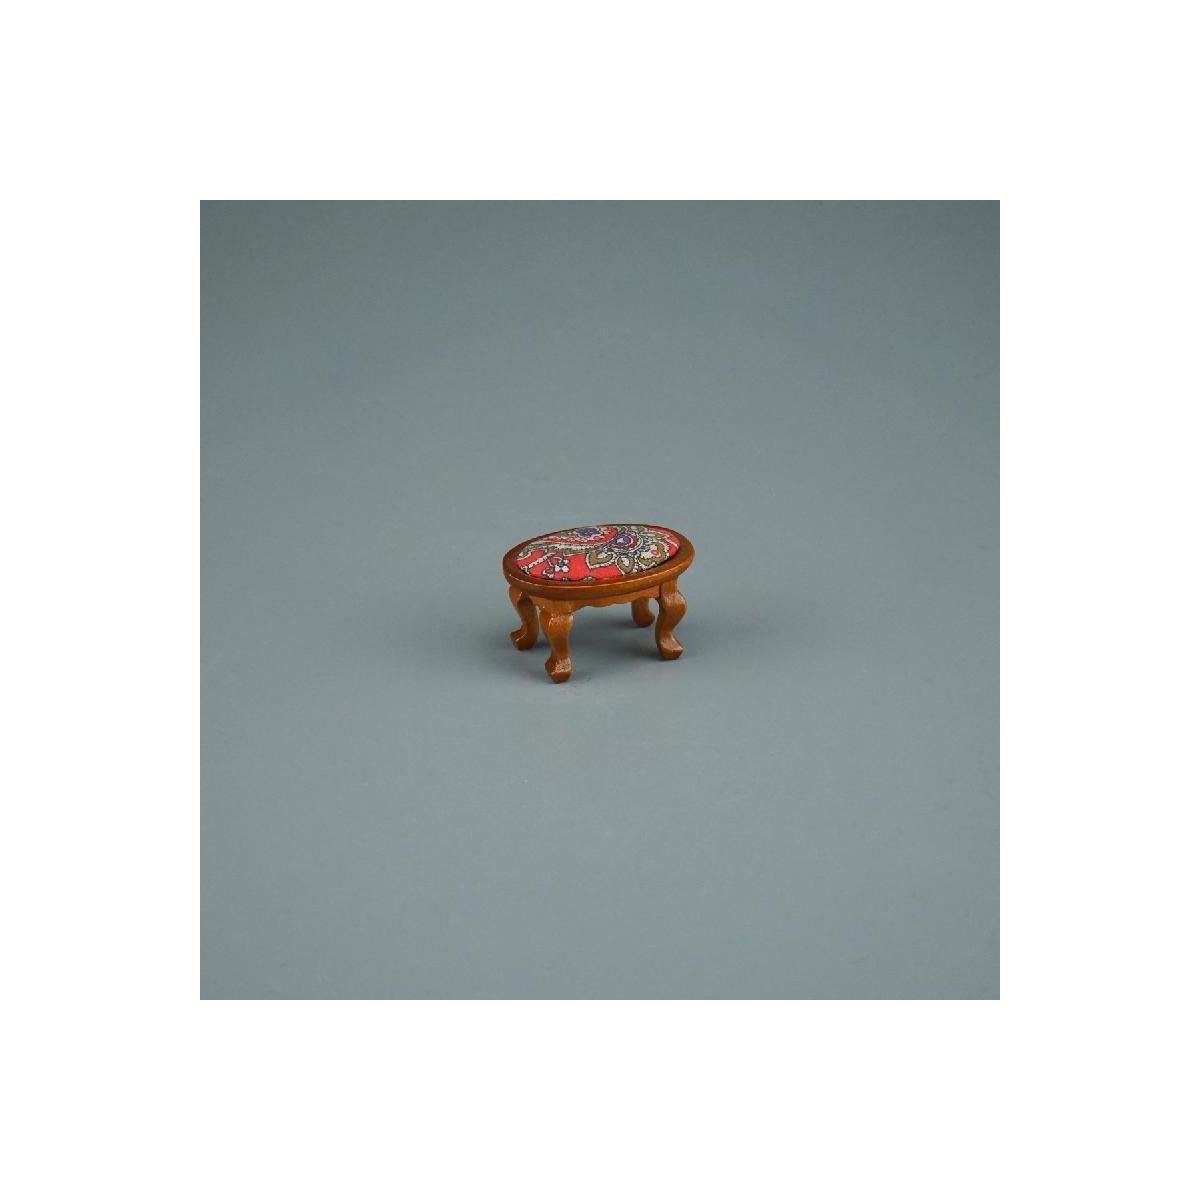 Porzellan Hocker Maßstab Gepolsterter Reutter 001.862/4 rot, im Dekofigur - 1:12 Miniatur